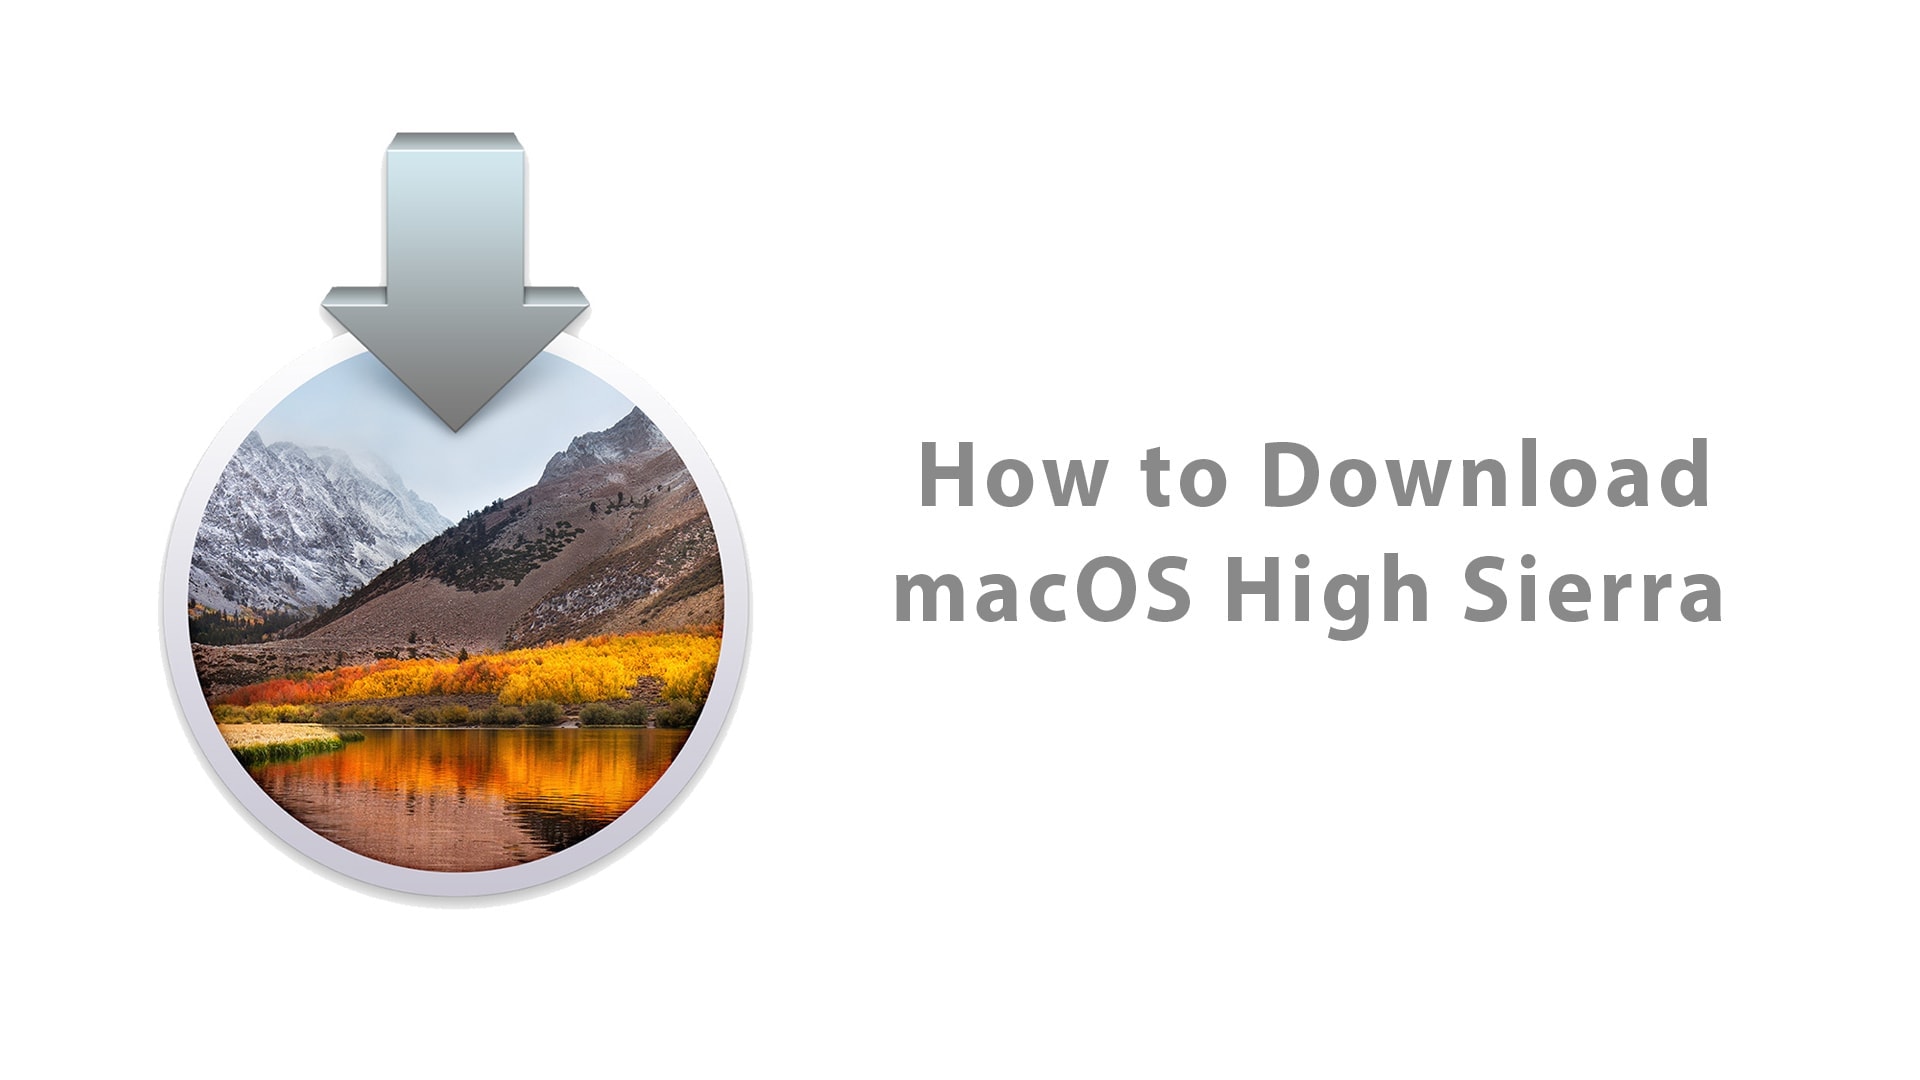 macos high sierra download apple